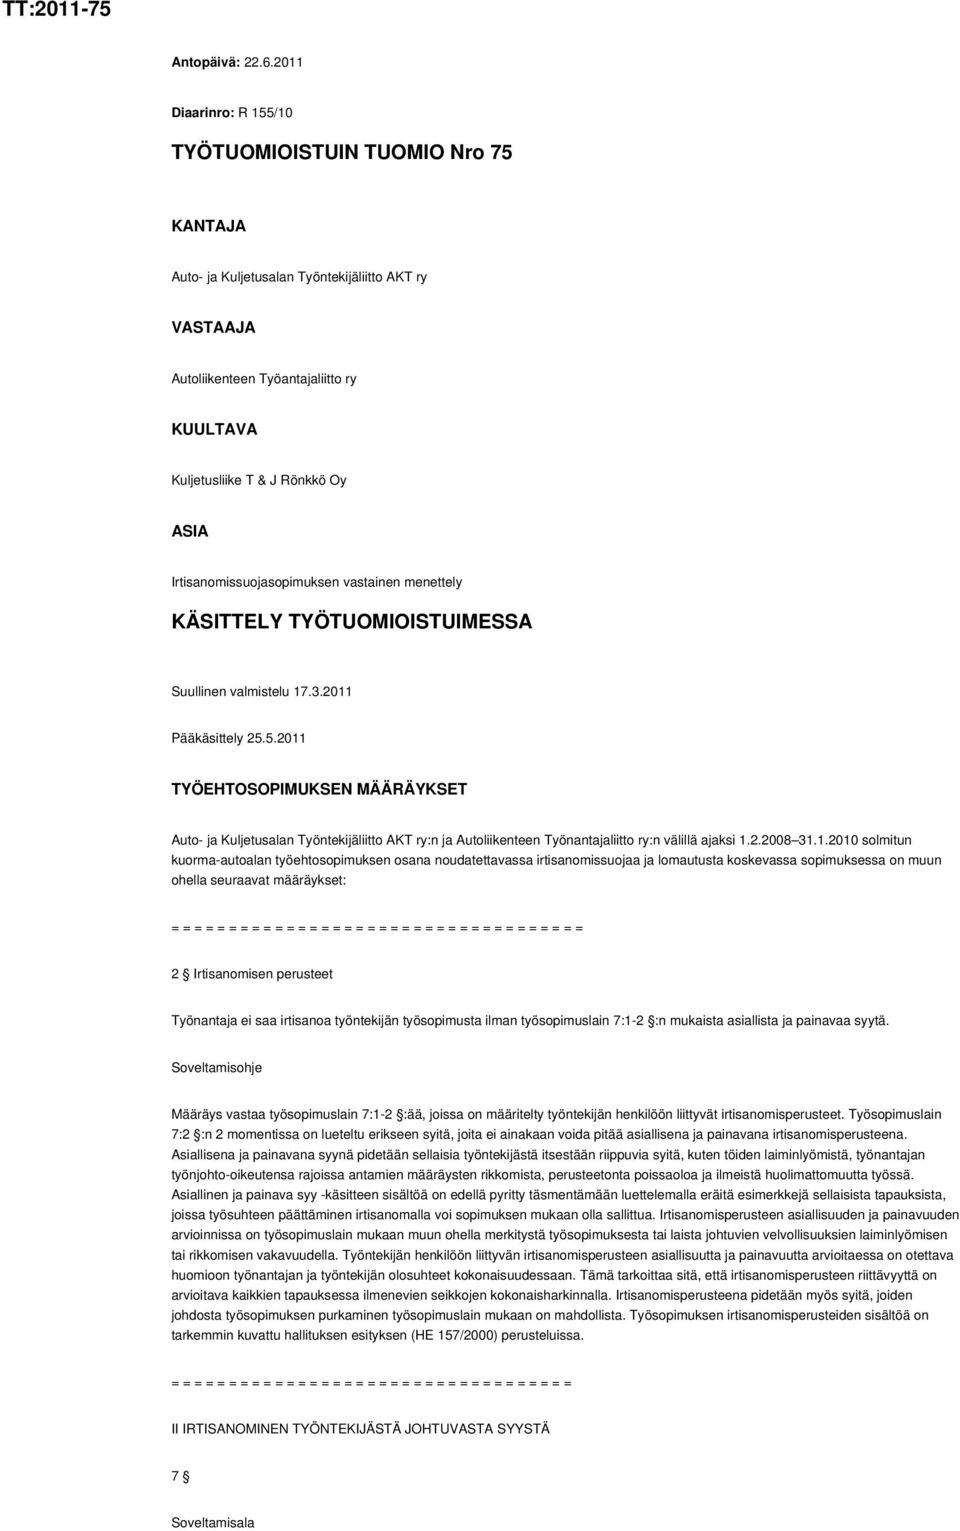 Irtisanomissuojasopimuksen vastainen menettely KÄSITTELY TYÖTUOMIOISTUIMESSA Suullinen valmistelu 17.3.2011 Pääkäsittely 25.